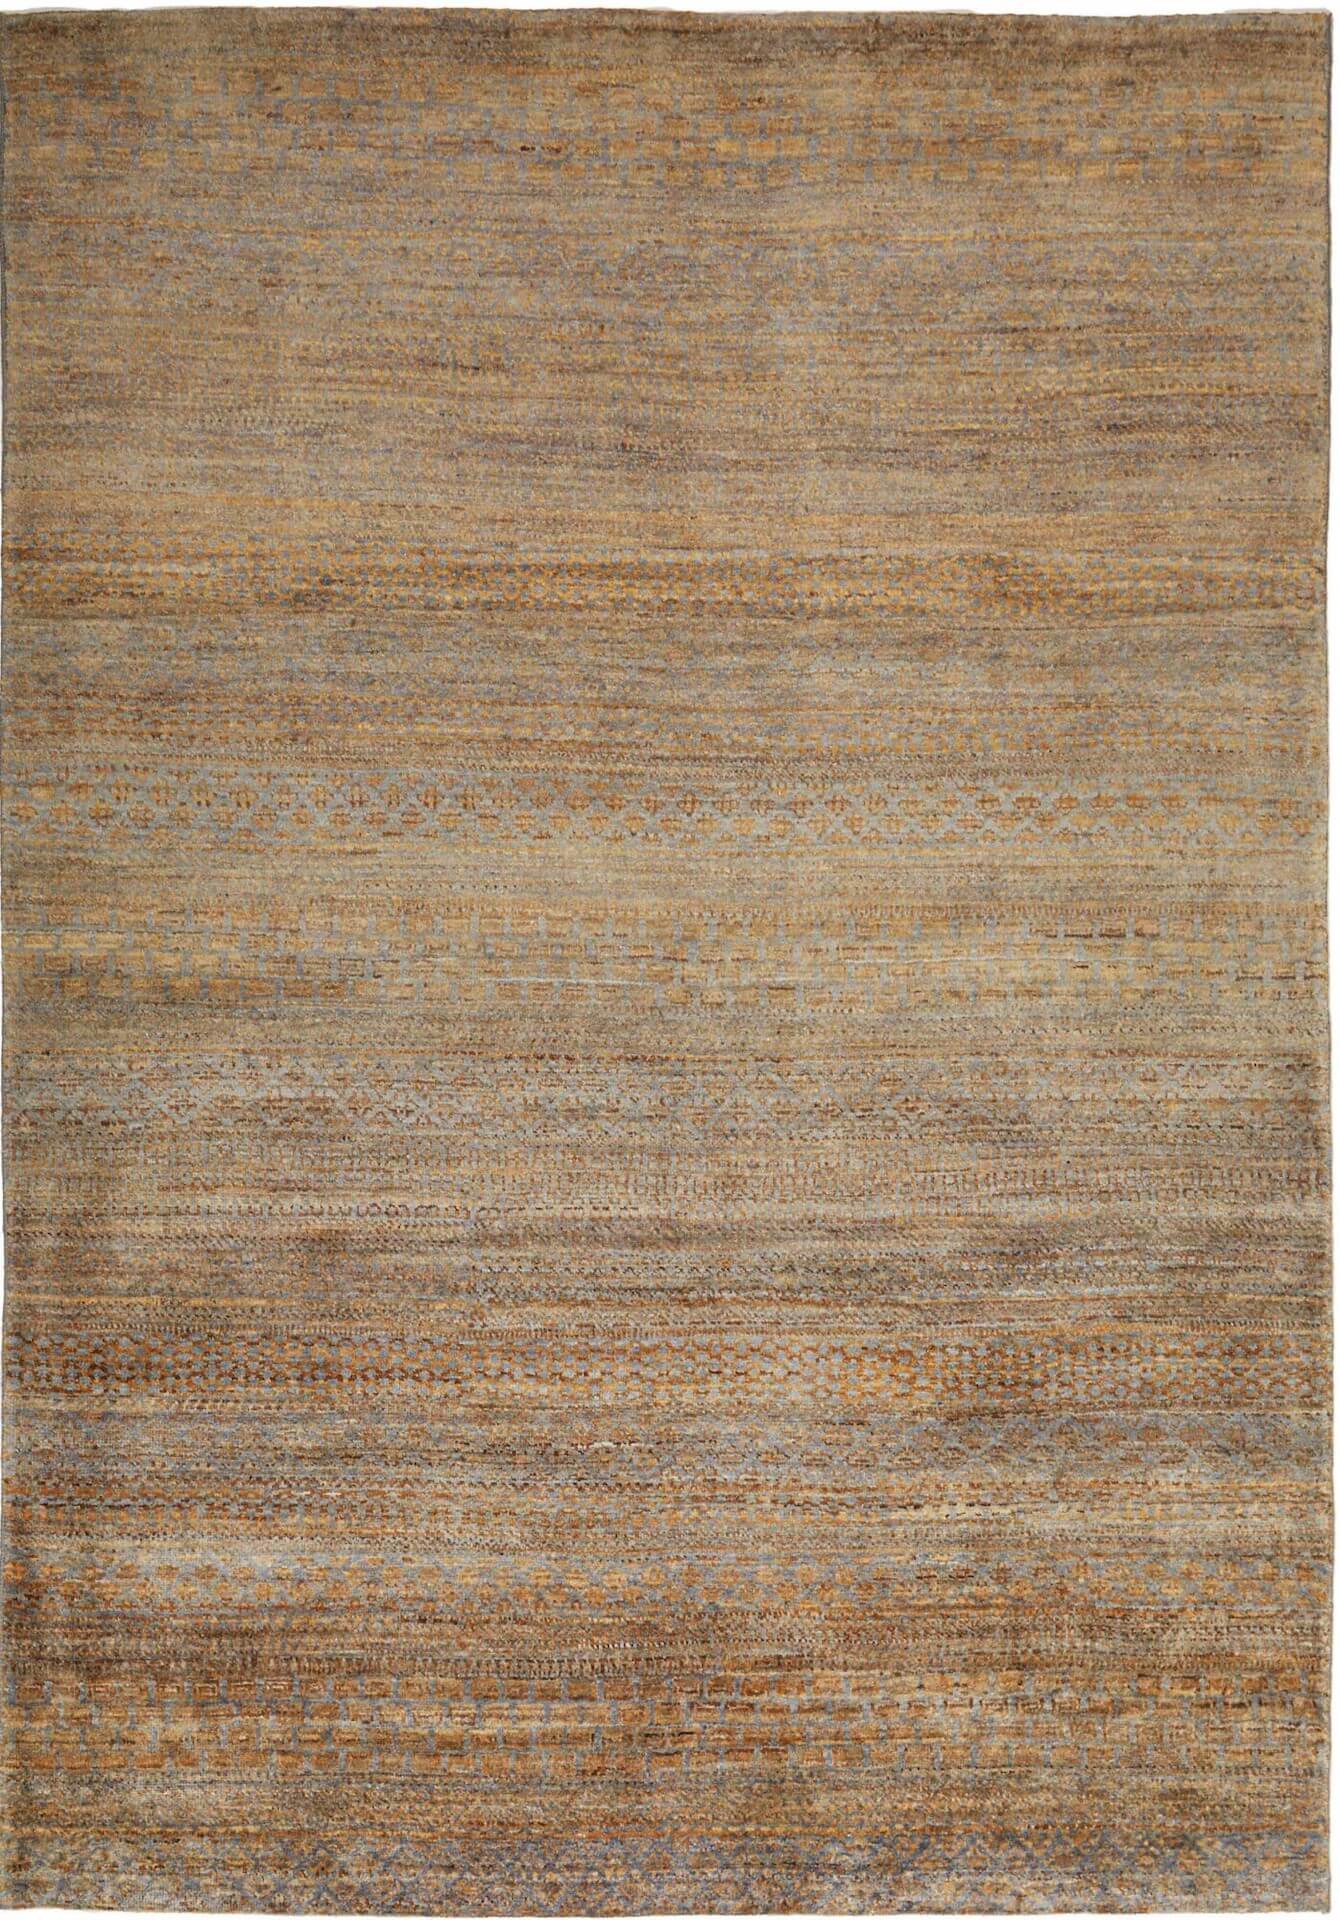 Afghanteppich MD.Royal Brown, handgeknüpft , Schurwolle, braun/mehrfarbig, 169 x 246 cm, Draufsicht